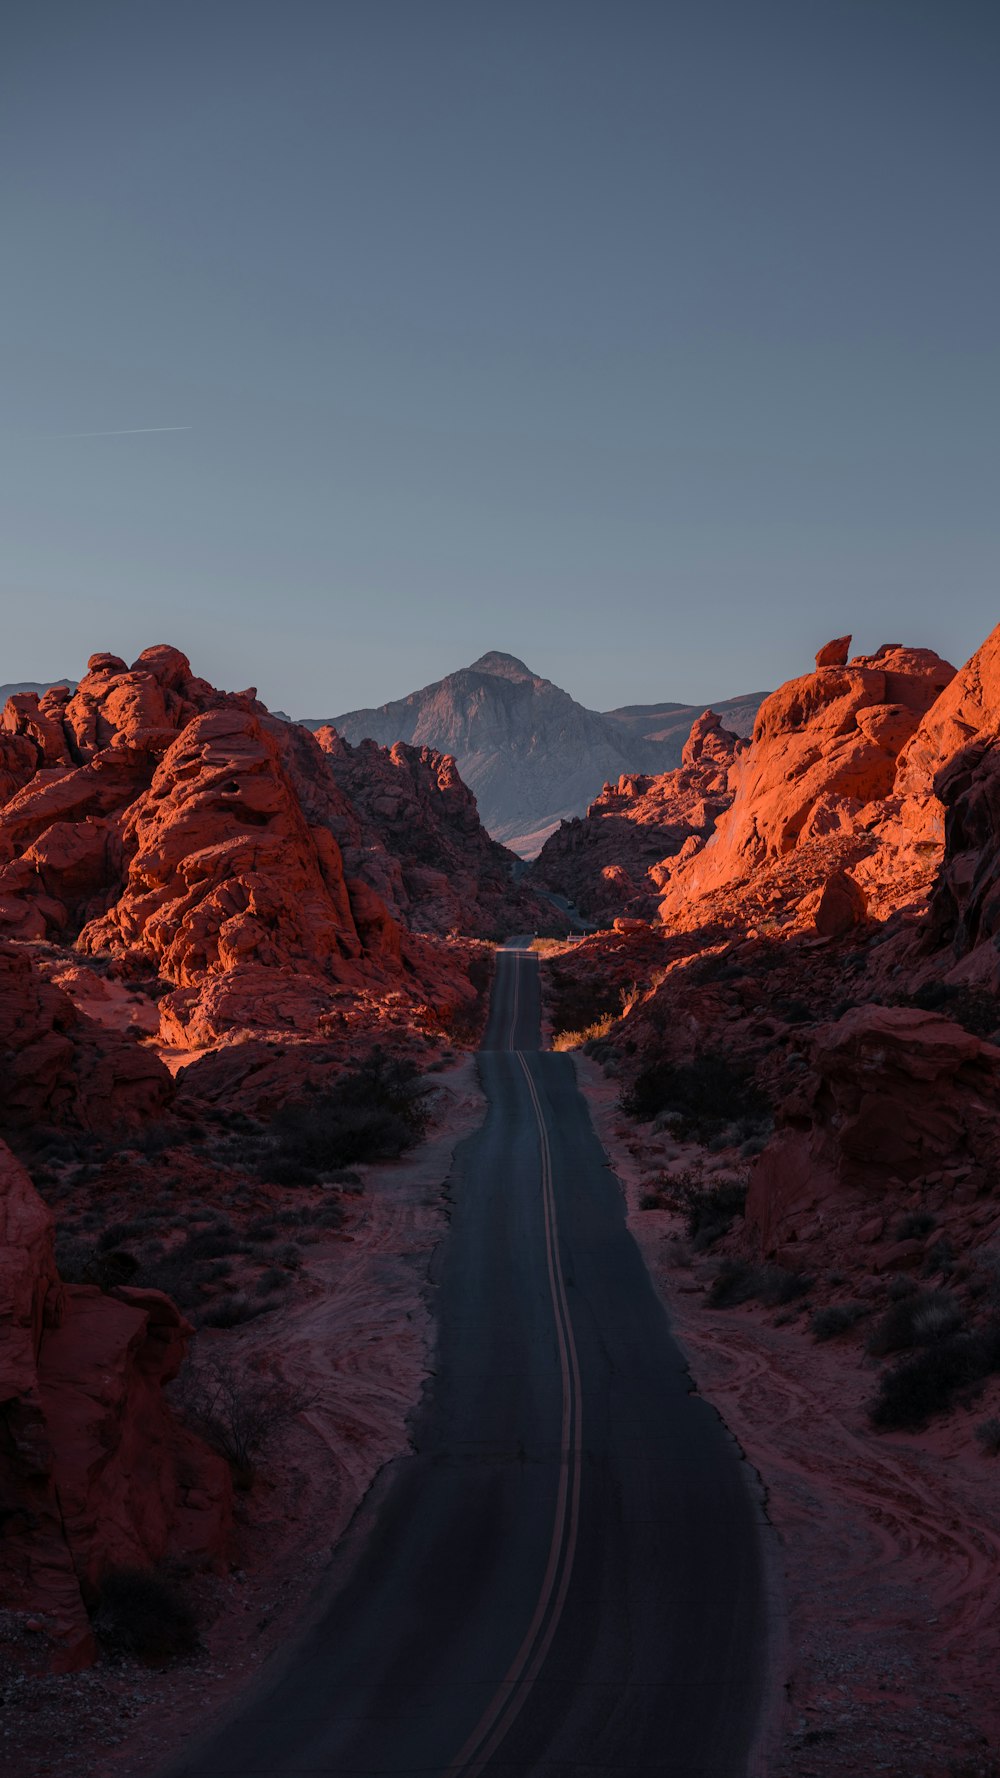 Eine Straße mitten in einer Wüste mit Bergen im Hintergrund